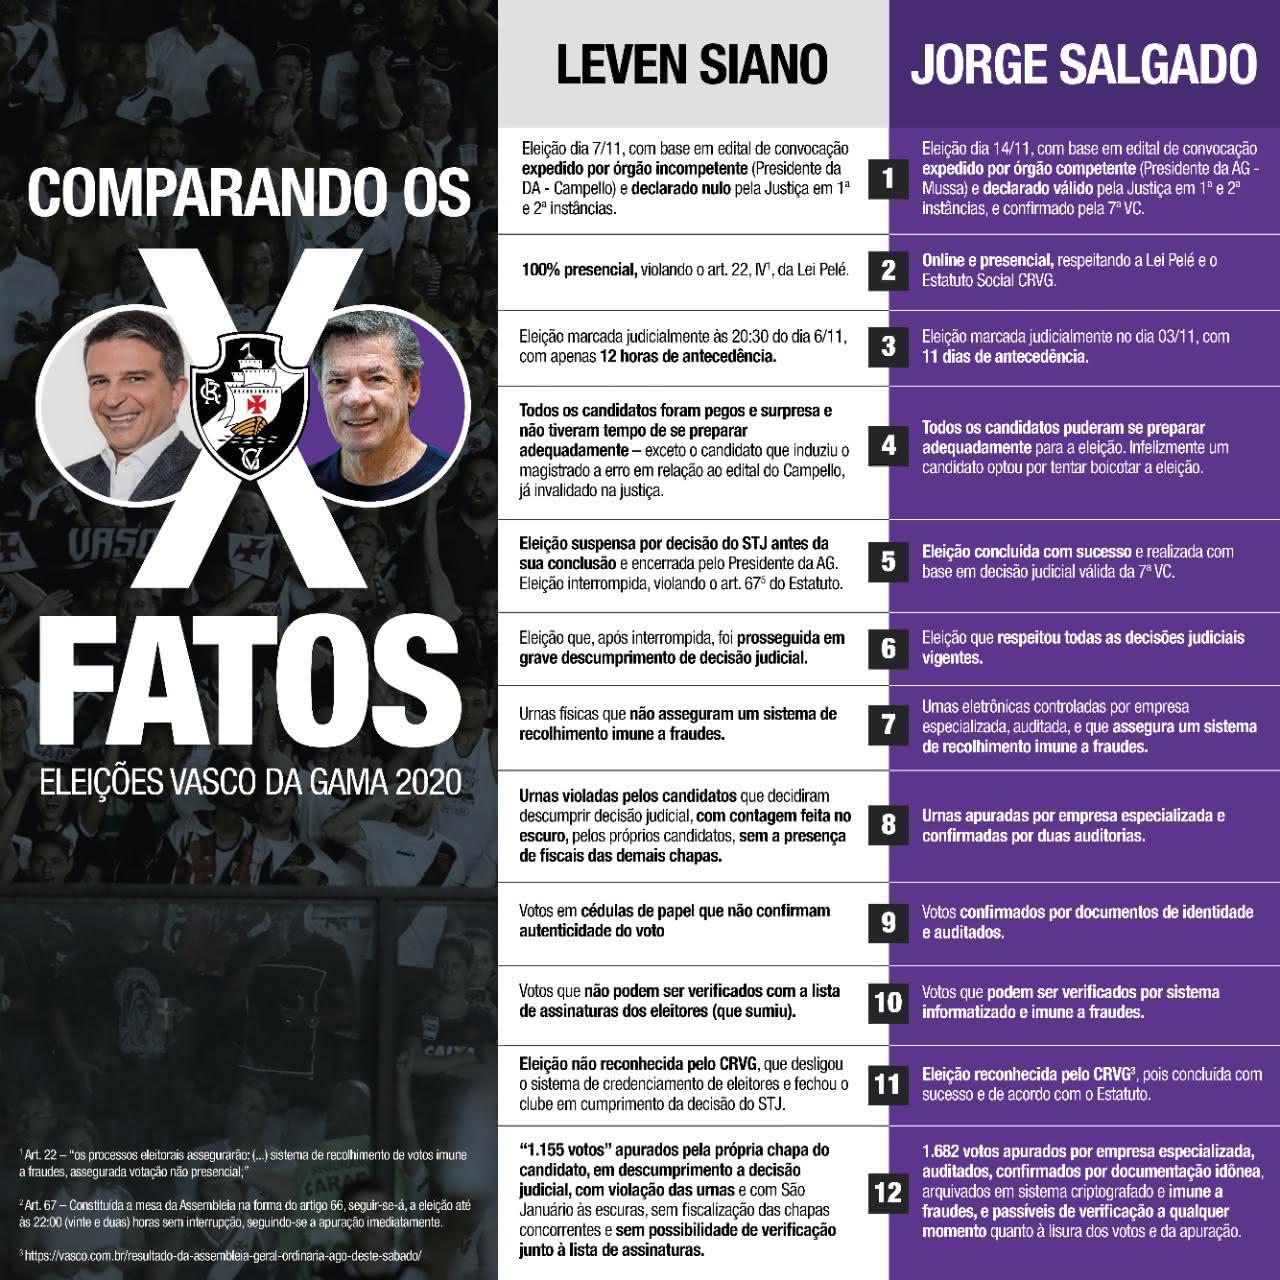 Comparação de fatos entre Jorge Salgado e Leven Siano